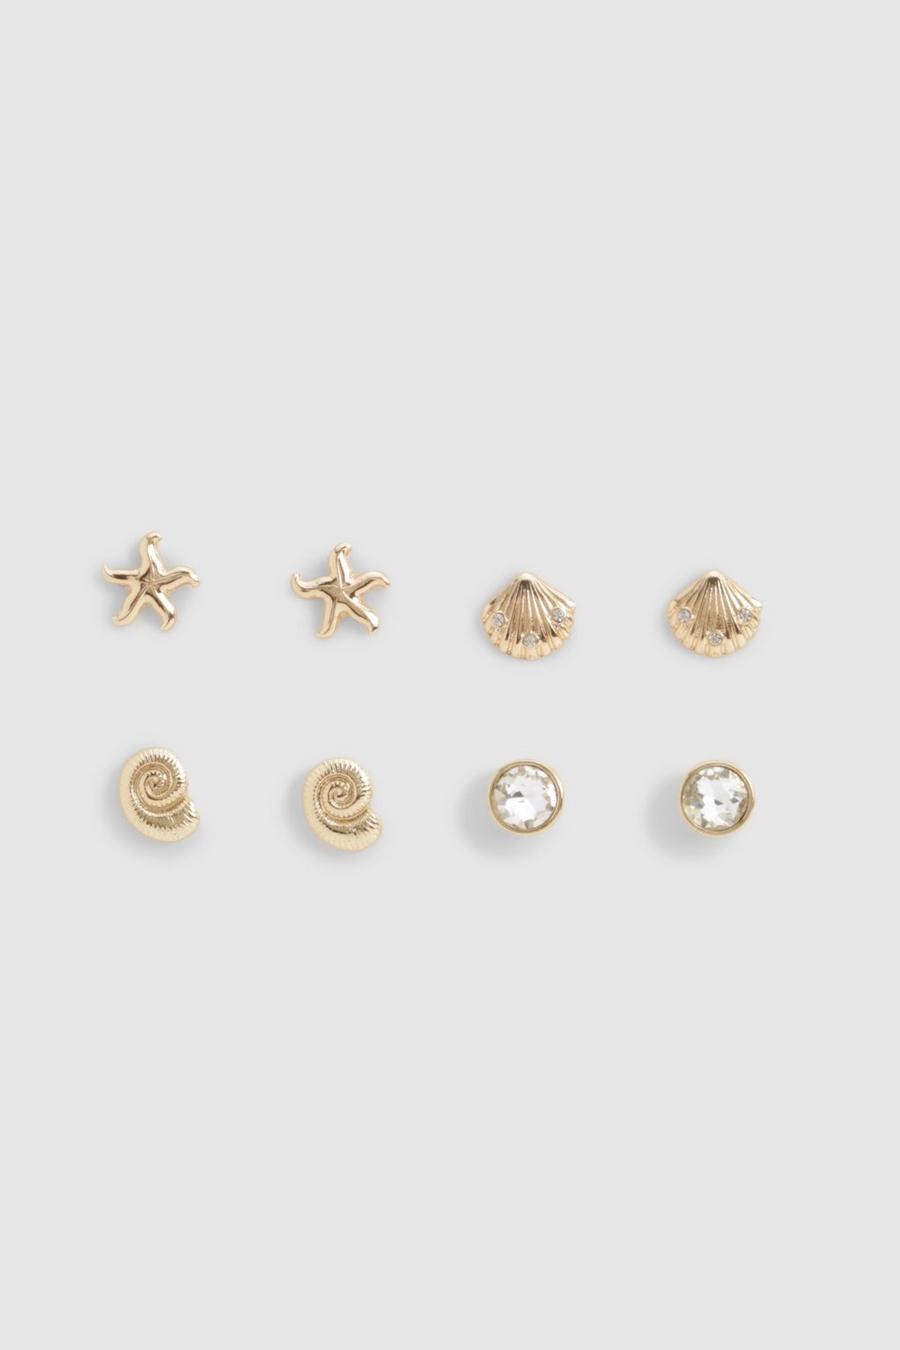 Gold Seashell Stud Earrings 4 Pack